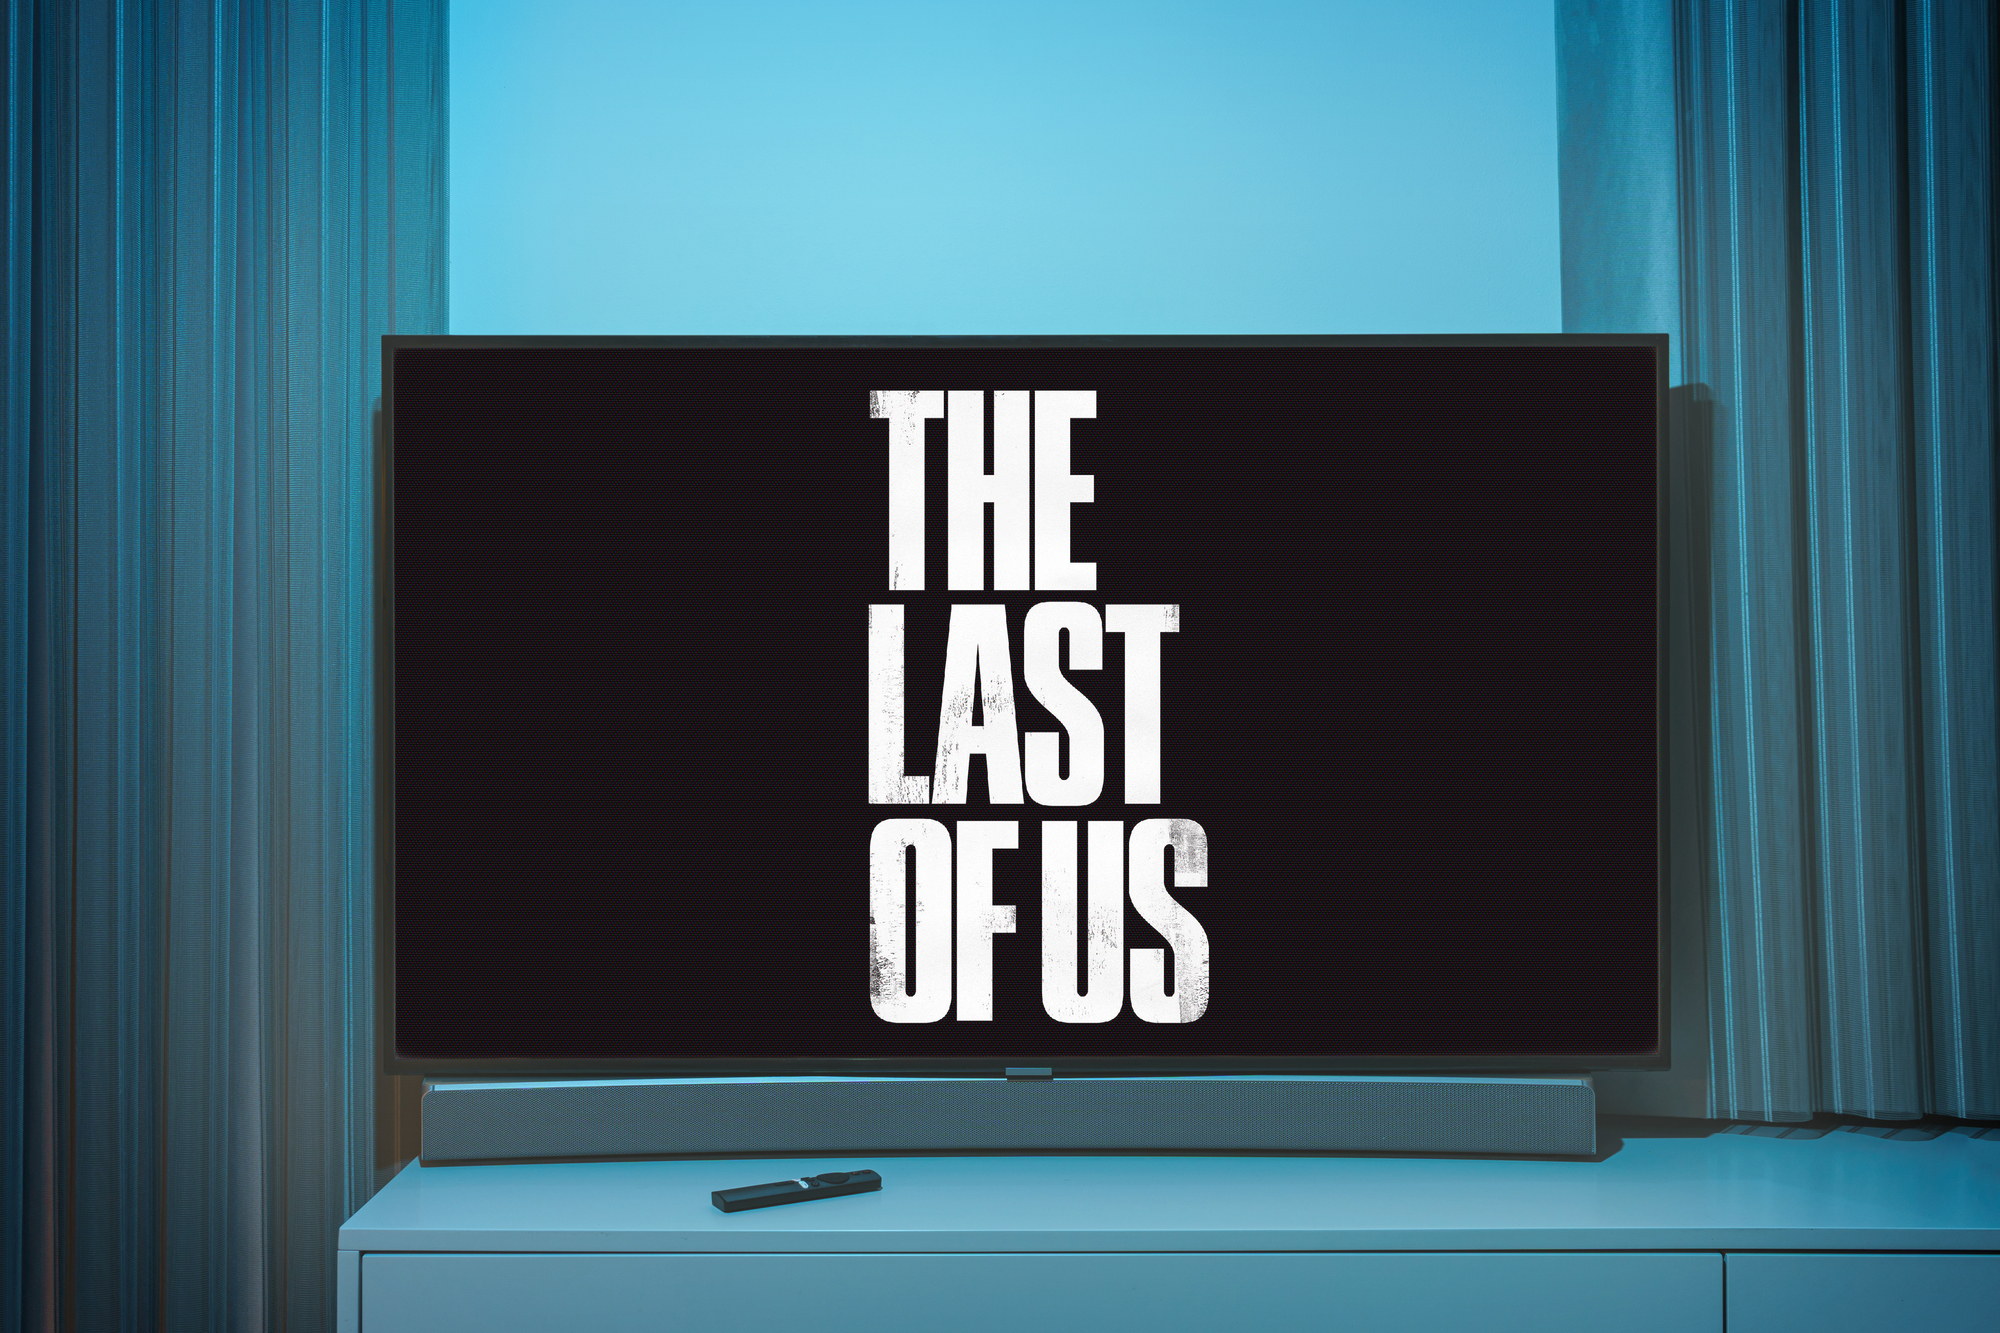 Schriftzug von The last of US auf einem Fernseher